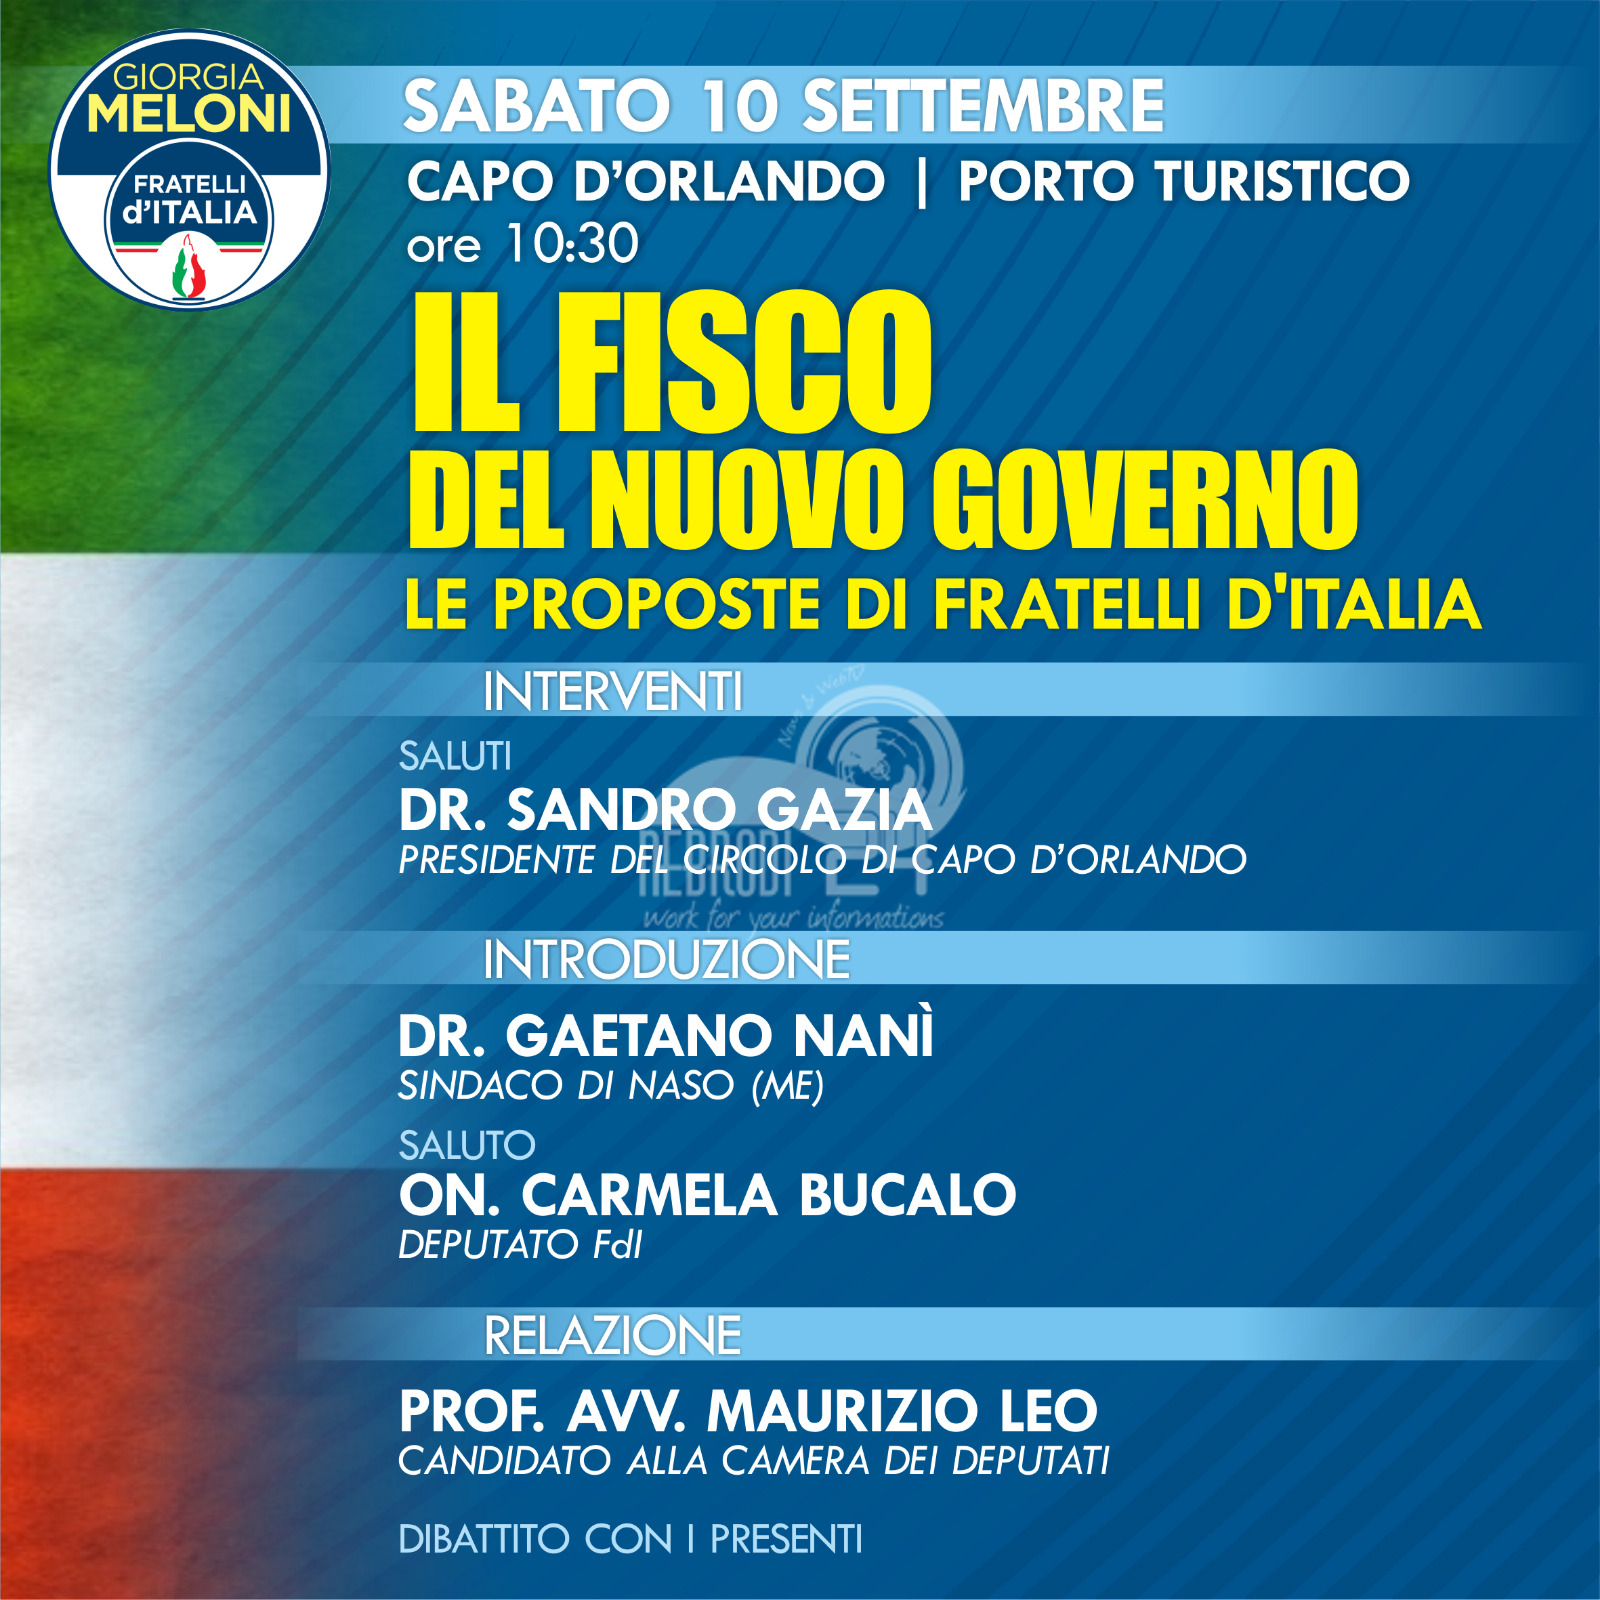 Fisco: le proposte di Fratelli d’Italia. Incontro dibattito sabato 10 settembre a Capo d’Orlando Marina